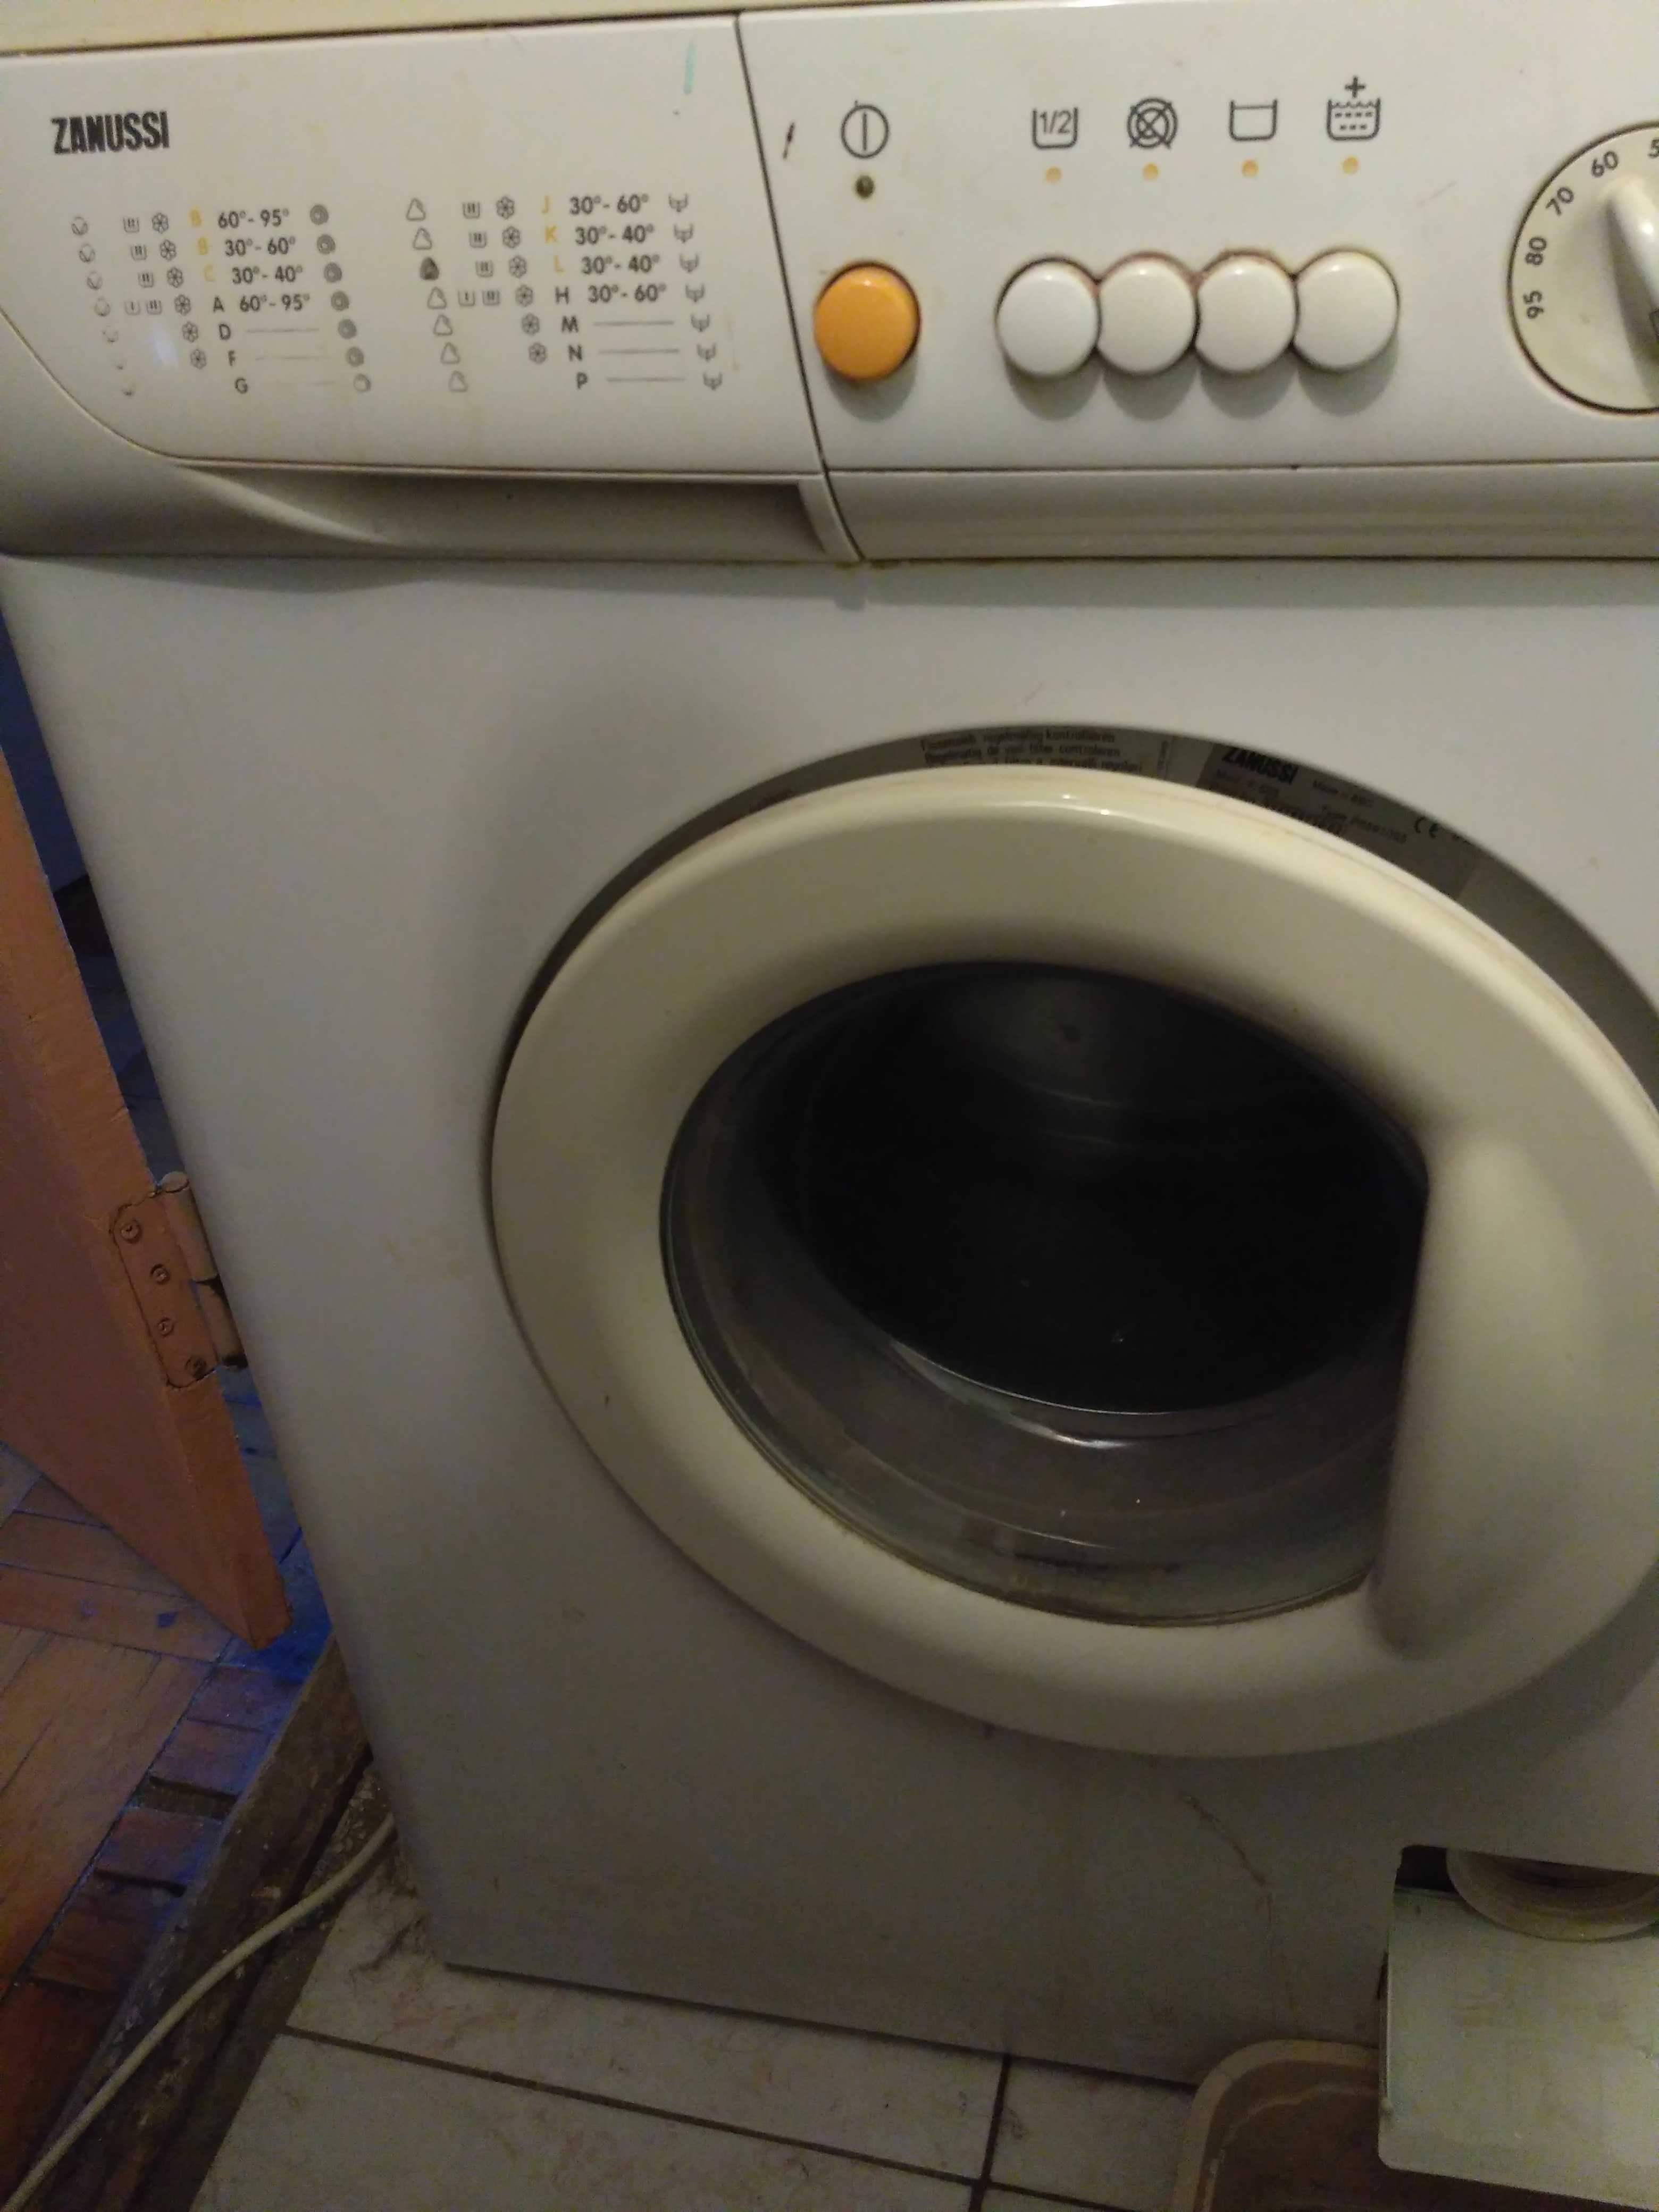 Как утилизировать старую стиральную машину